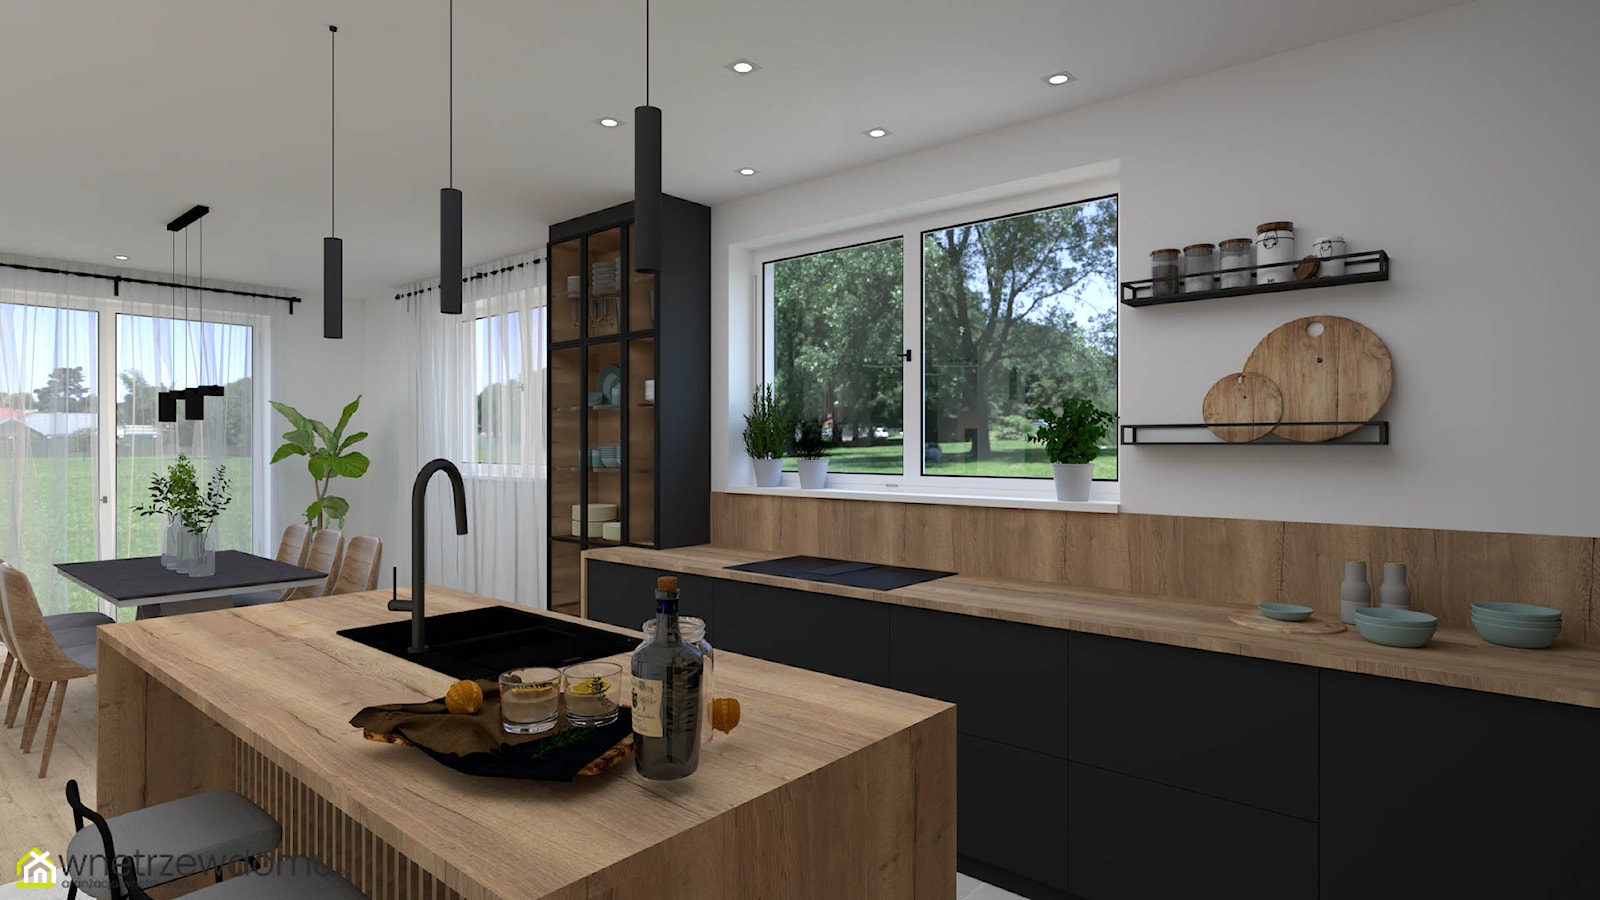 Połączenie drewna i czerni w salonie z kuchnią - zdjęcie od wnetrzewdomu - Homebook